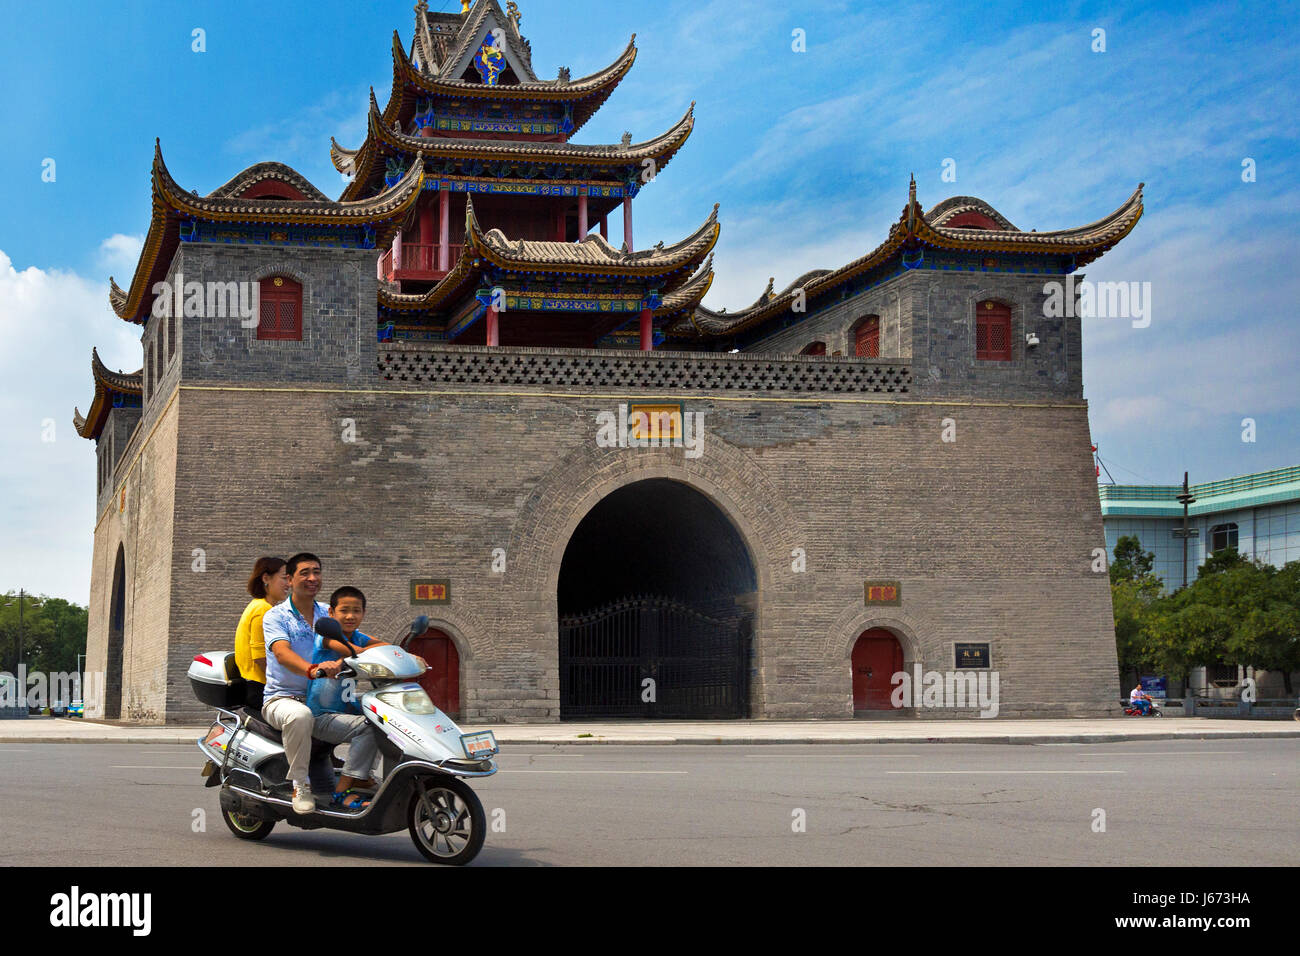 Le trafic à tambour et le clocher, Yinchuan, Ningxia, Chine Banque D'Images